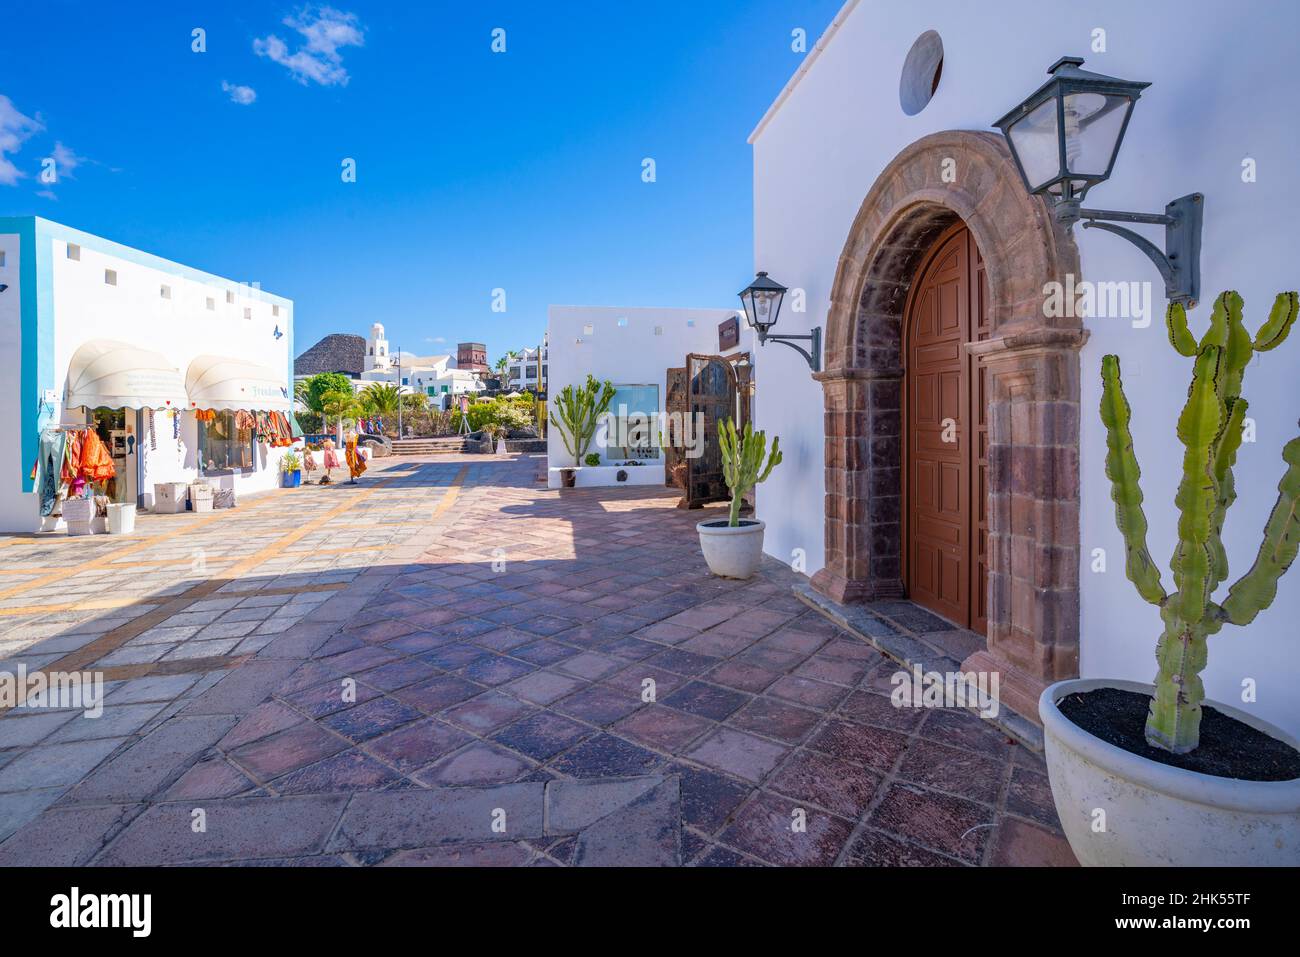 Blick auf den Eingang der Galerie und die Geschäfte in Rubicon Marina, Playa Blanca, Lanzarote, Kanarische Inseln, Spanien, Atlantik, Europa Stockfoto